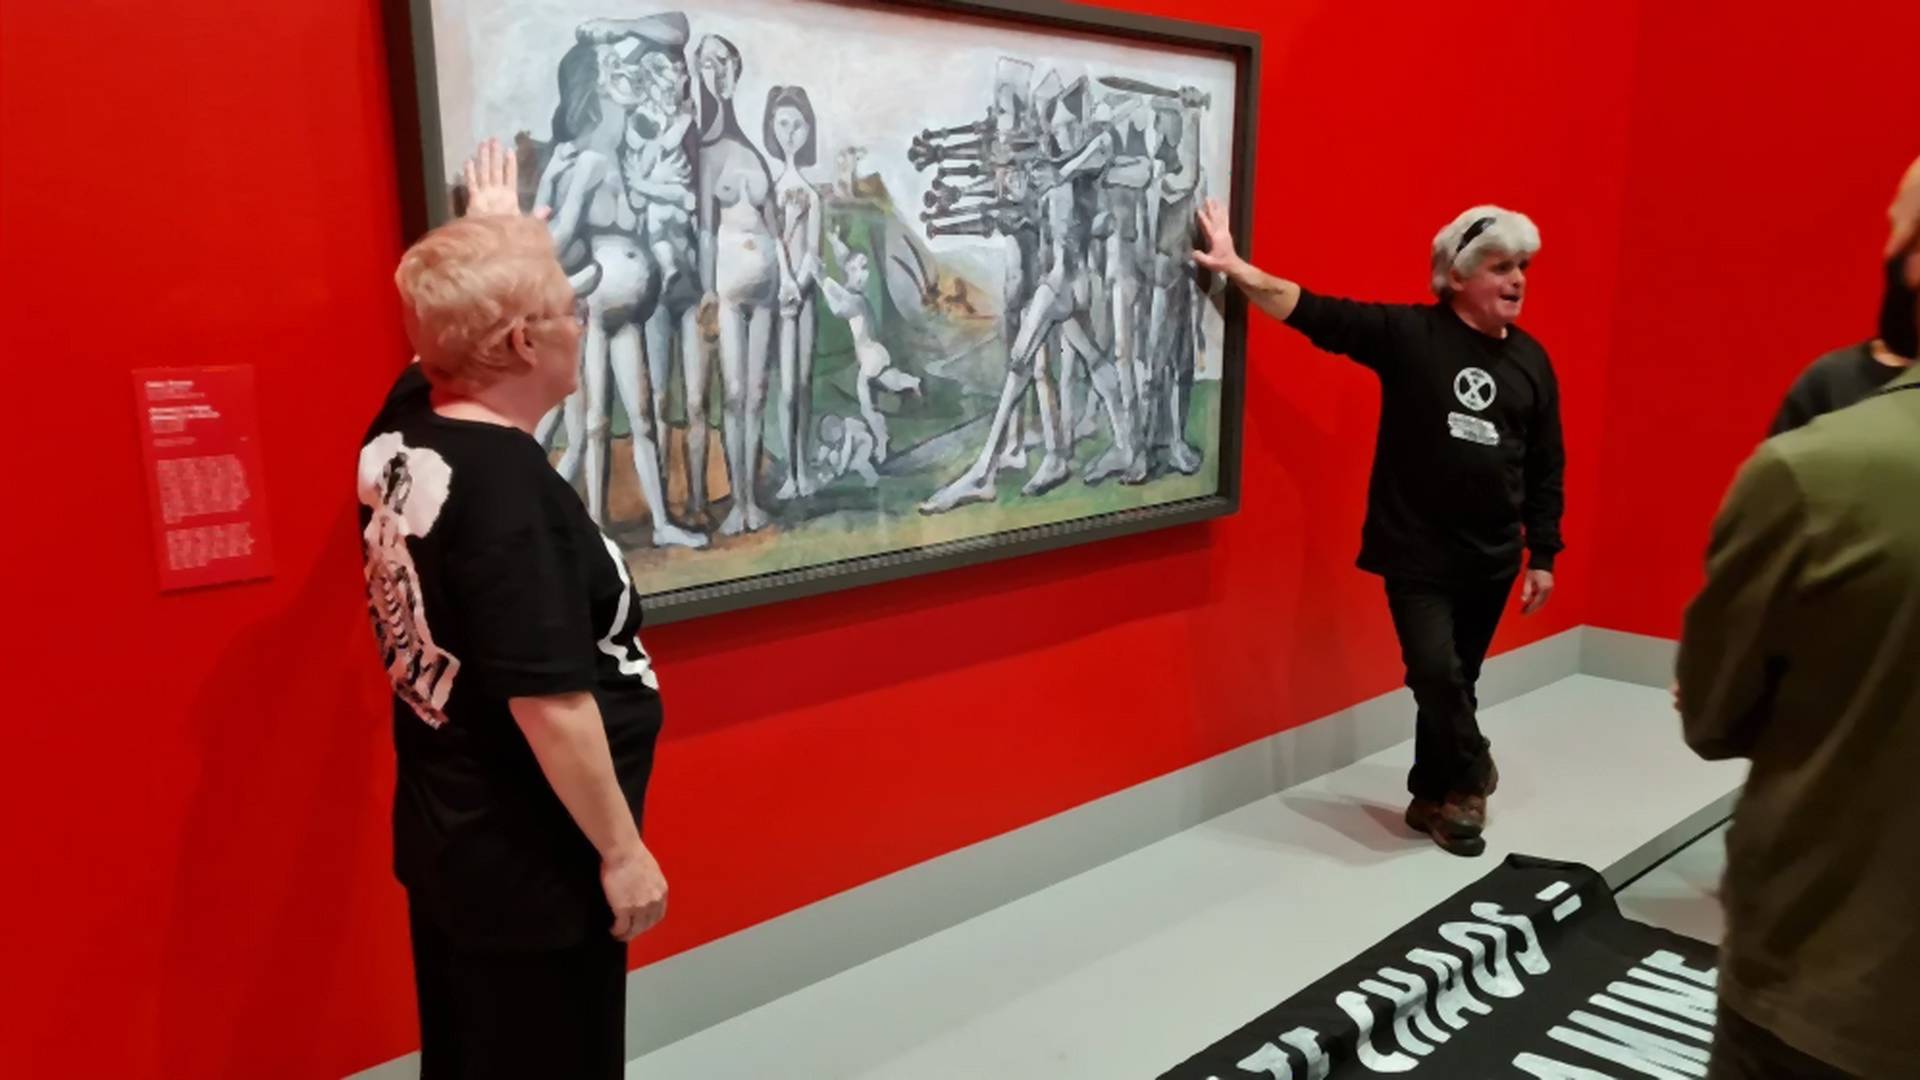 Klímaaktivisták ragasztották magukat Picasso festményéhez Melbourne-ben